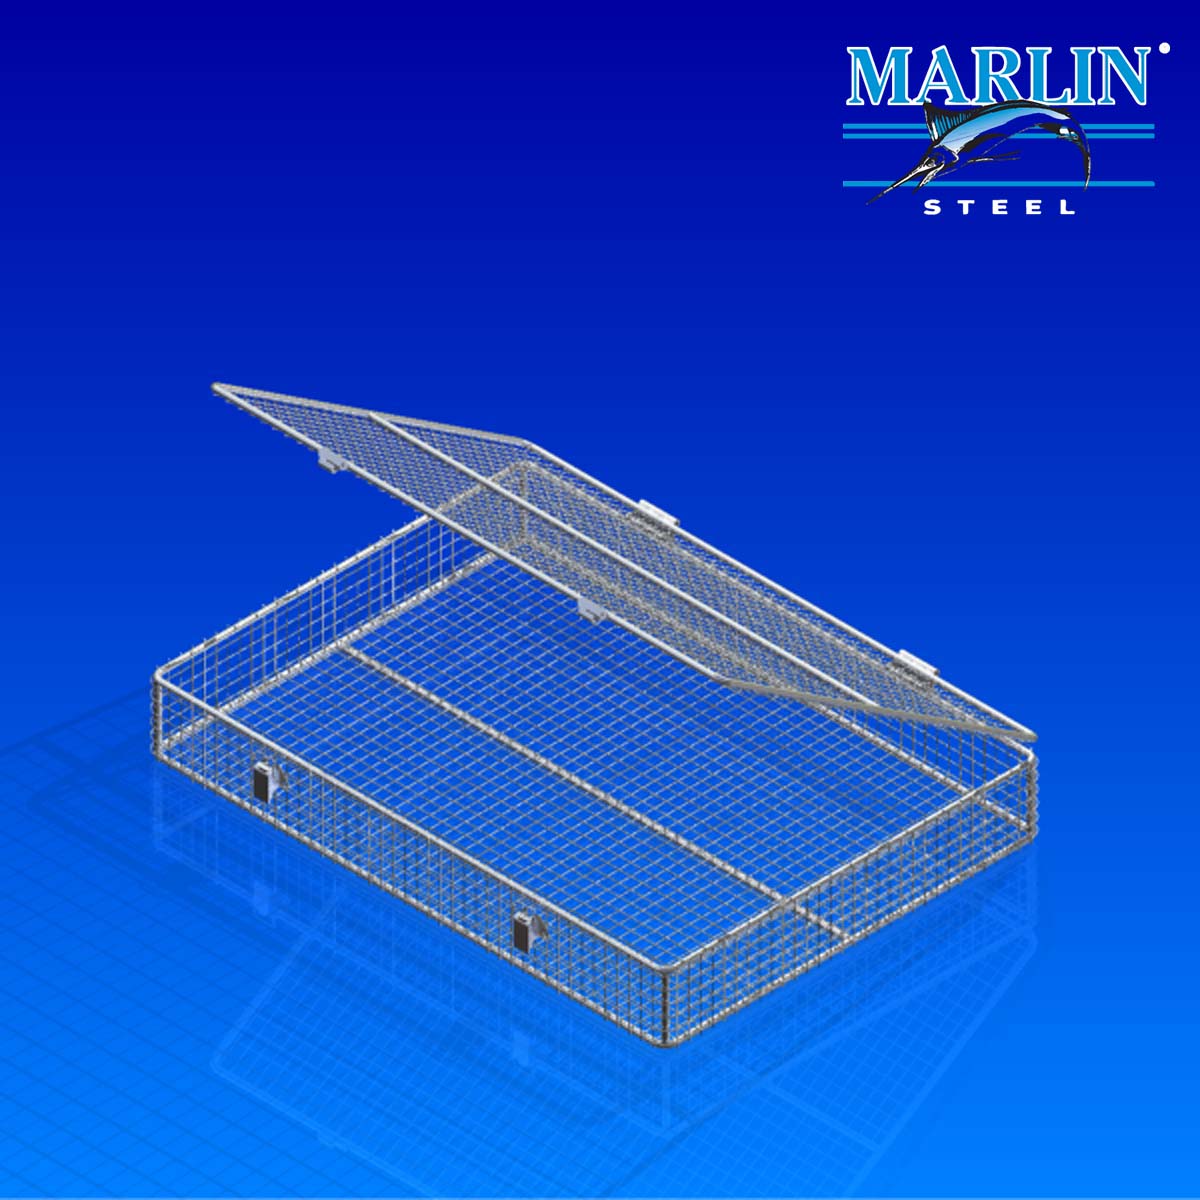 Marlin Steel wire baskets with lids 852001.jpg